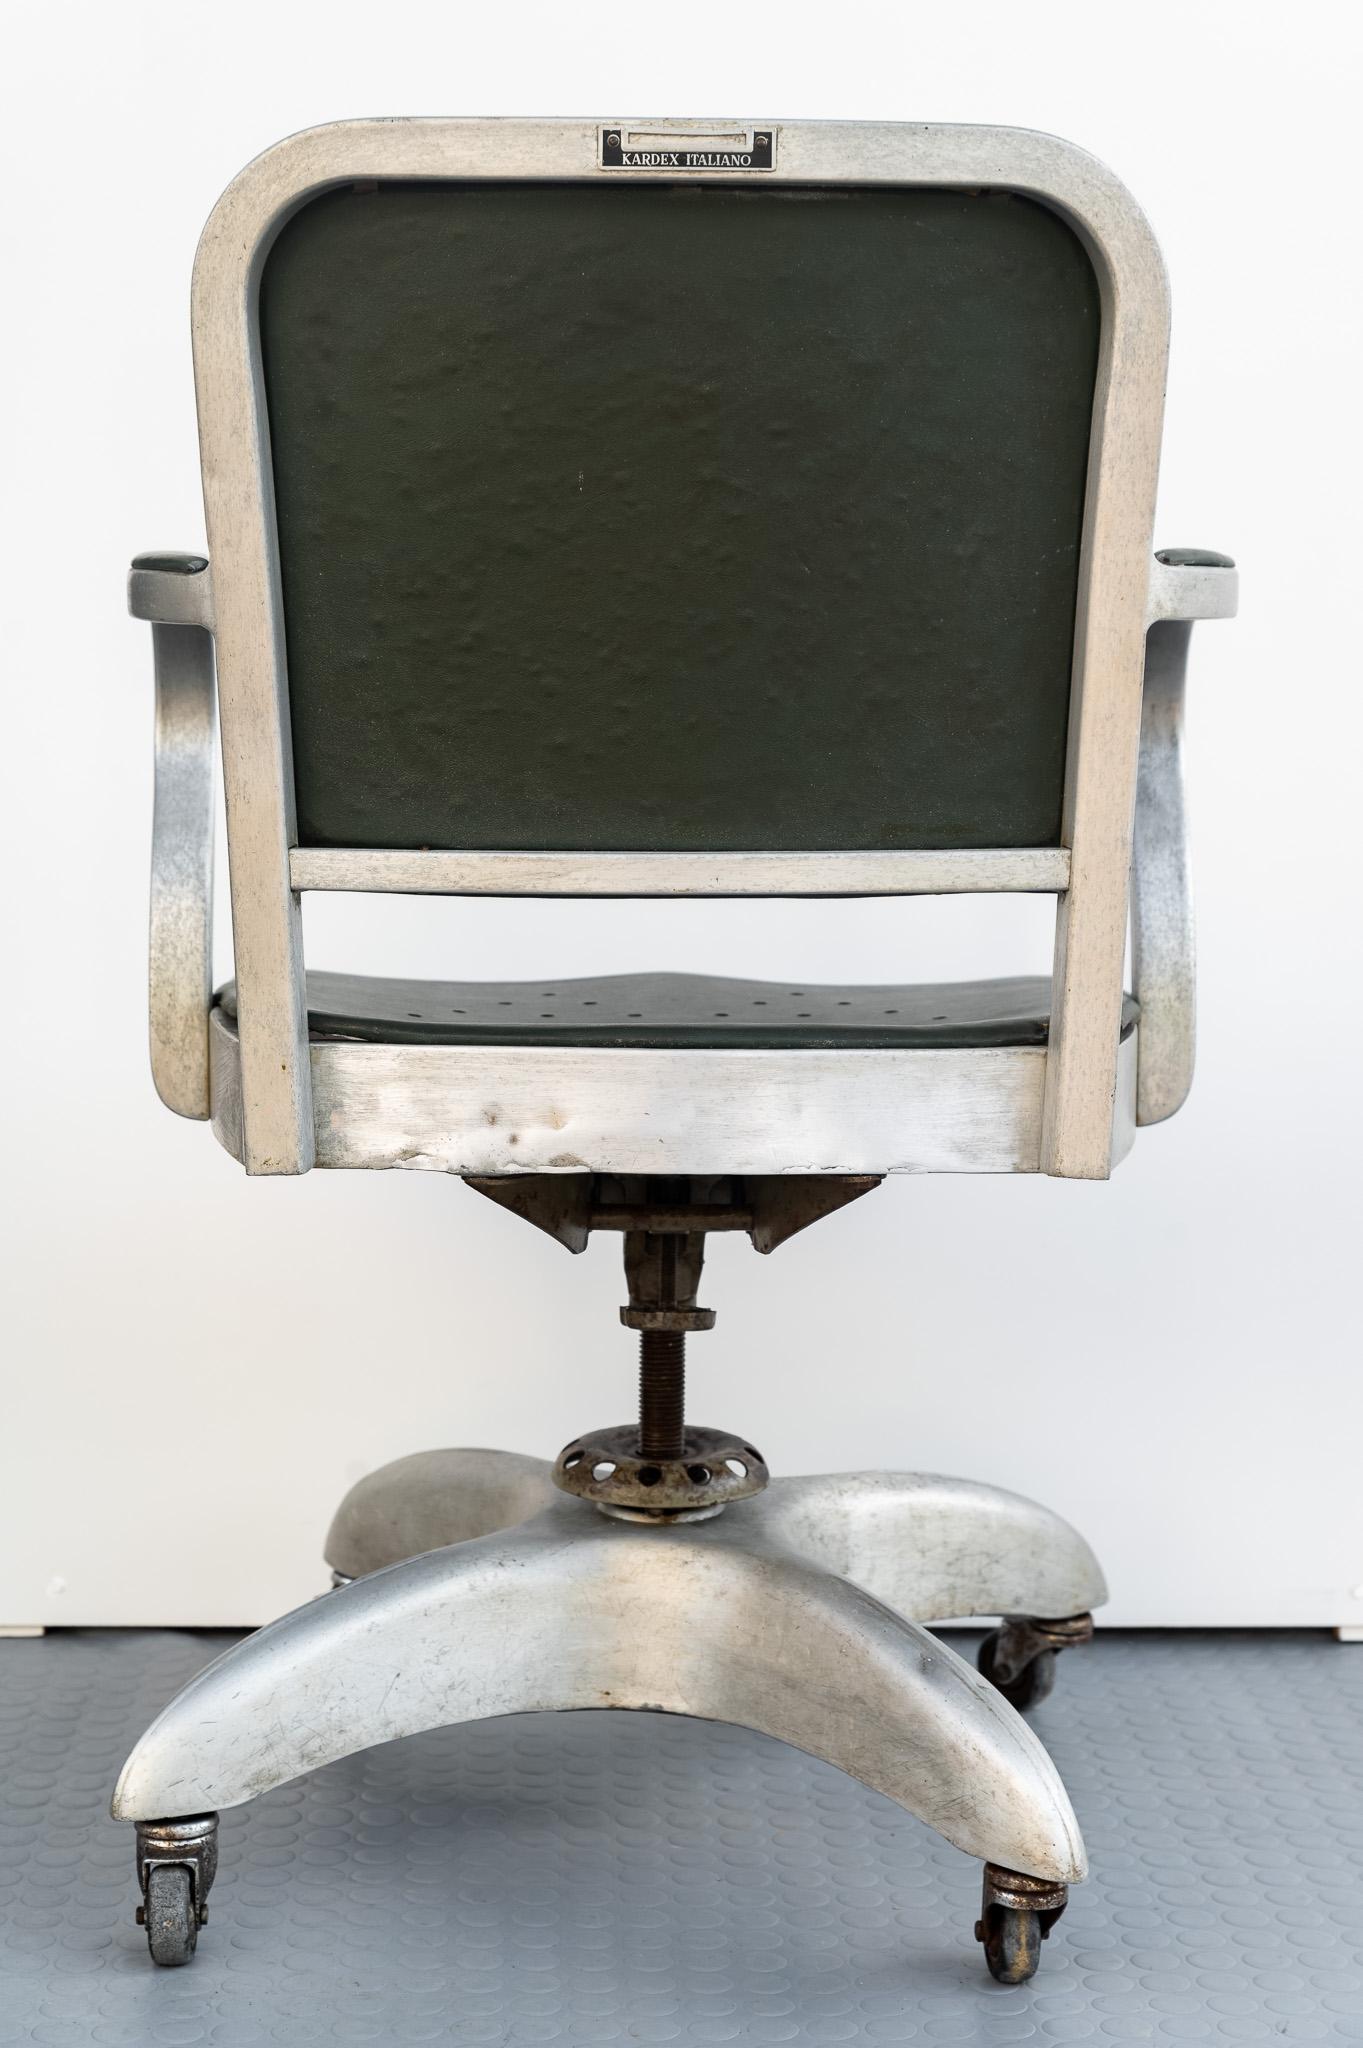 Stuhl Kardex Italia, 1930er Jahre.
Bürodrehstuhl aus Stahl und Aluminium, mit Vinyl überzogen und patiniert. 
Auf der Rückseite der Rückenlehne befindet sich ein Etikett mit der Aufschrift 